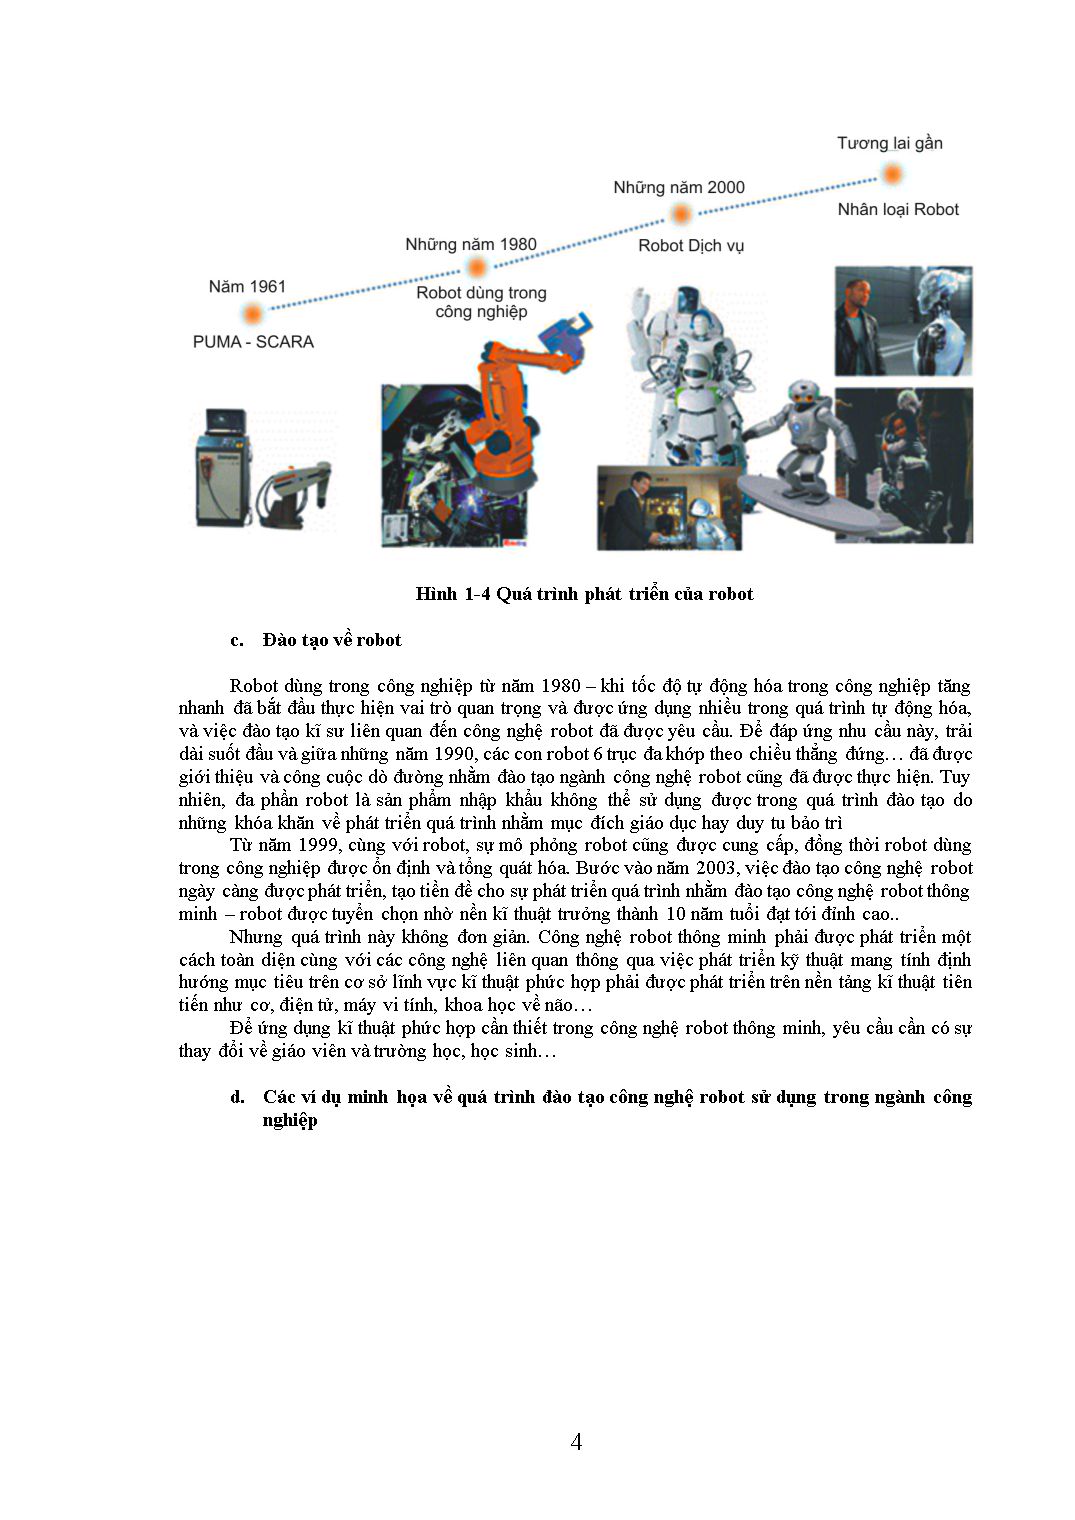 Giáo trình Robot công nghiệp trang 5